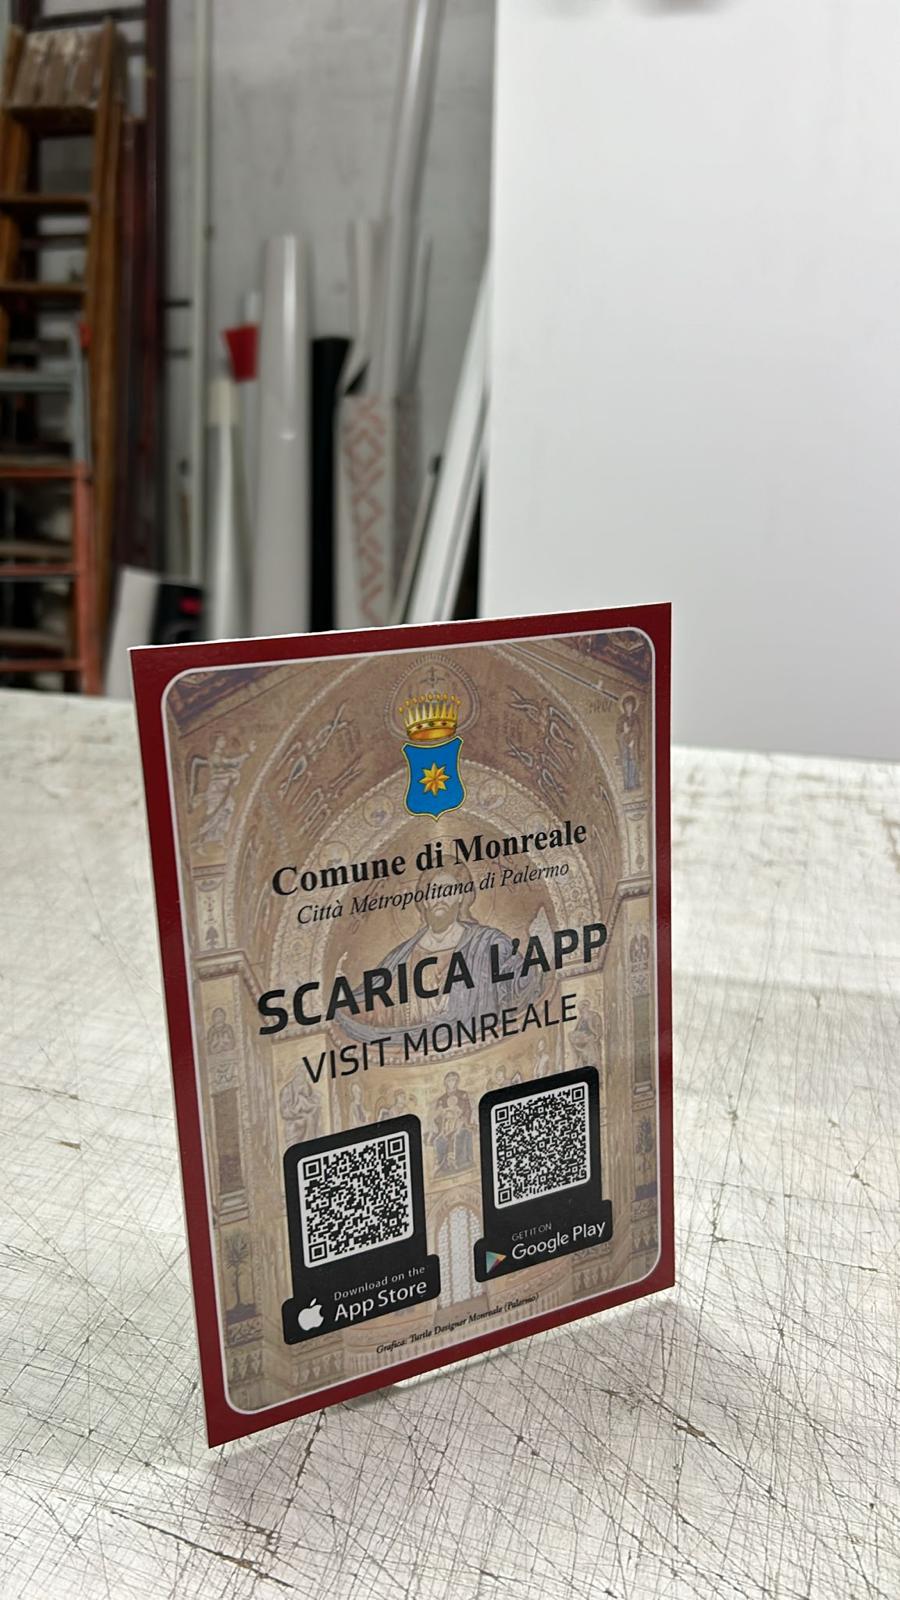 “Visit Monreale”: Il Comune  presenta la nuova app turistica alla Bit di Milano: Gia’ attiva e scaricabile